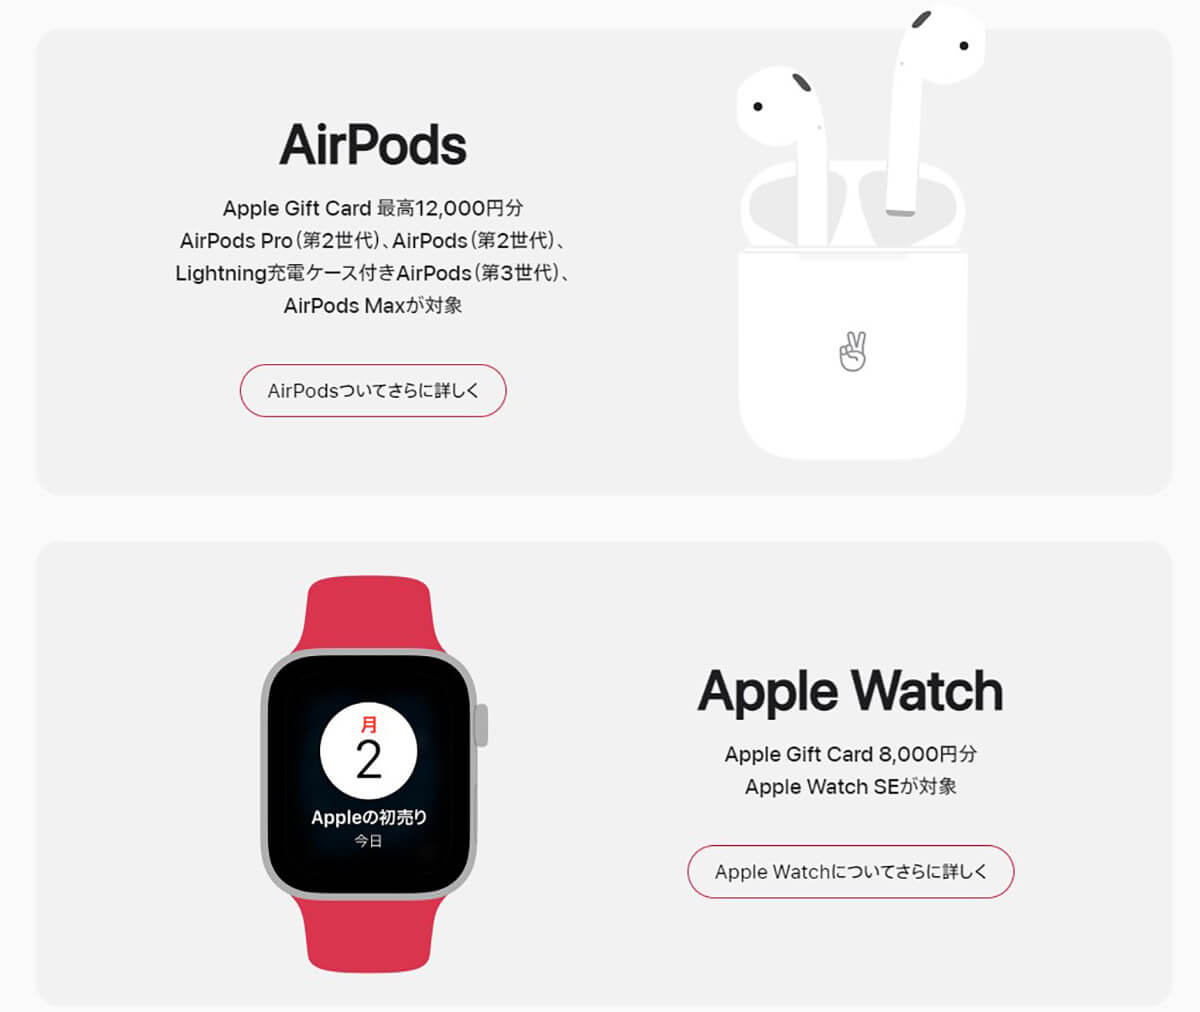 Apple Watch SEが実質29,800円で買える